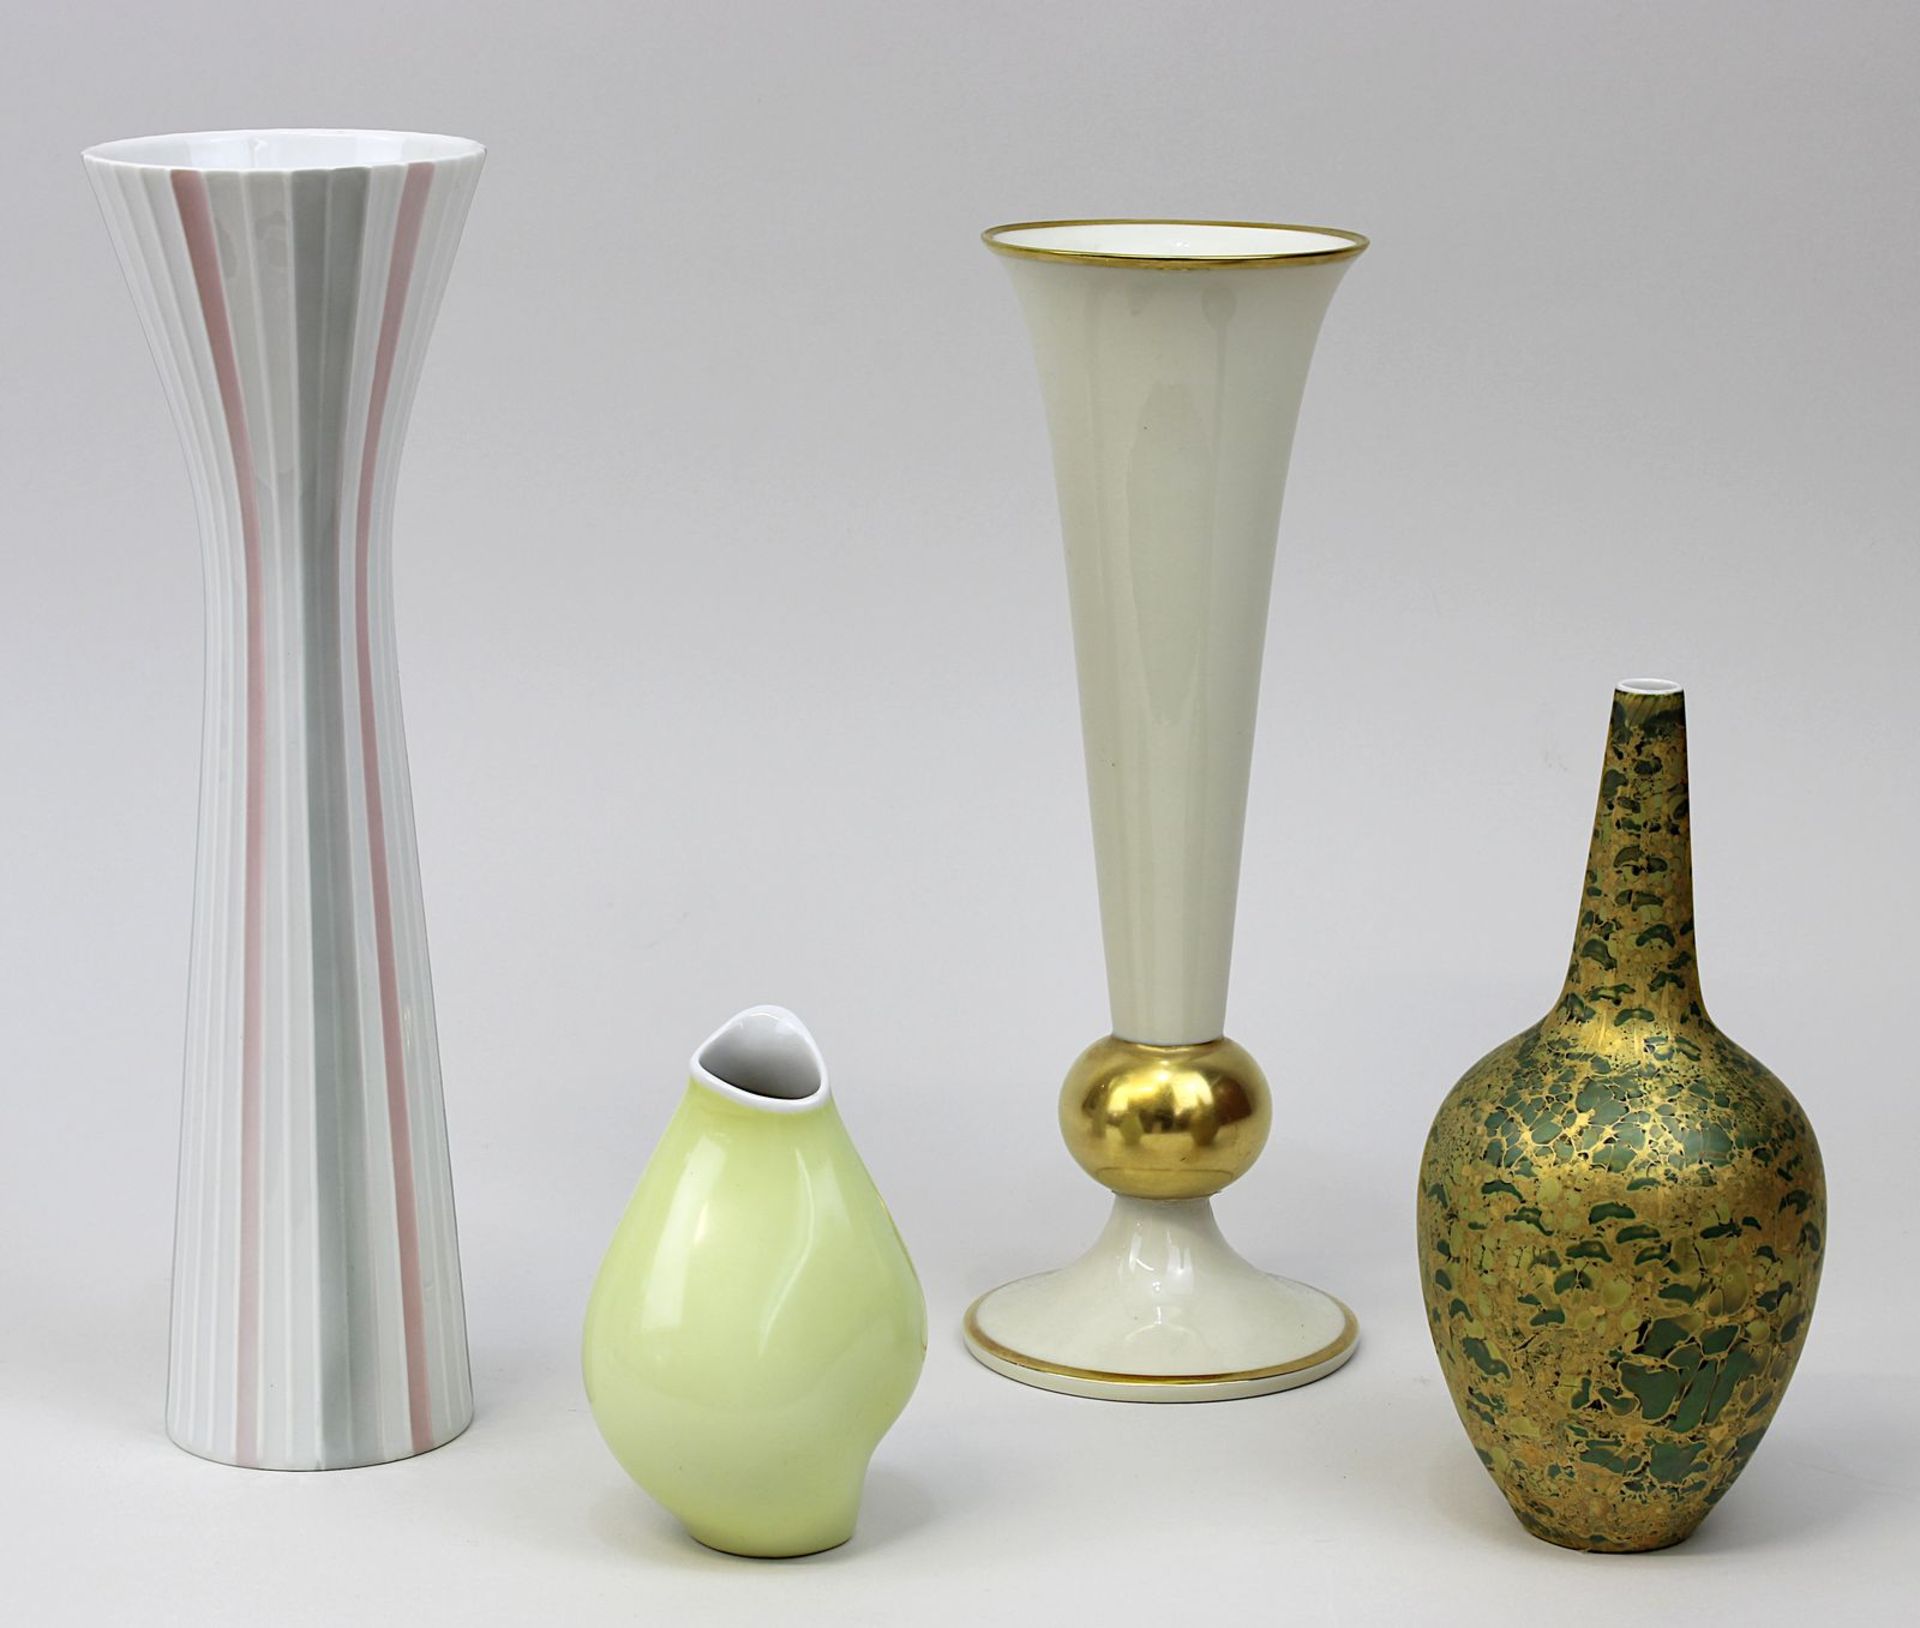 Vier Vasen Rosenthal-Porzellan, M. bis 2. H. 20. Jh., teils farbig, teils gold staffiert, H: zw.